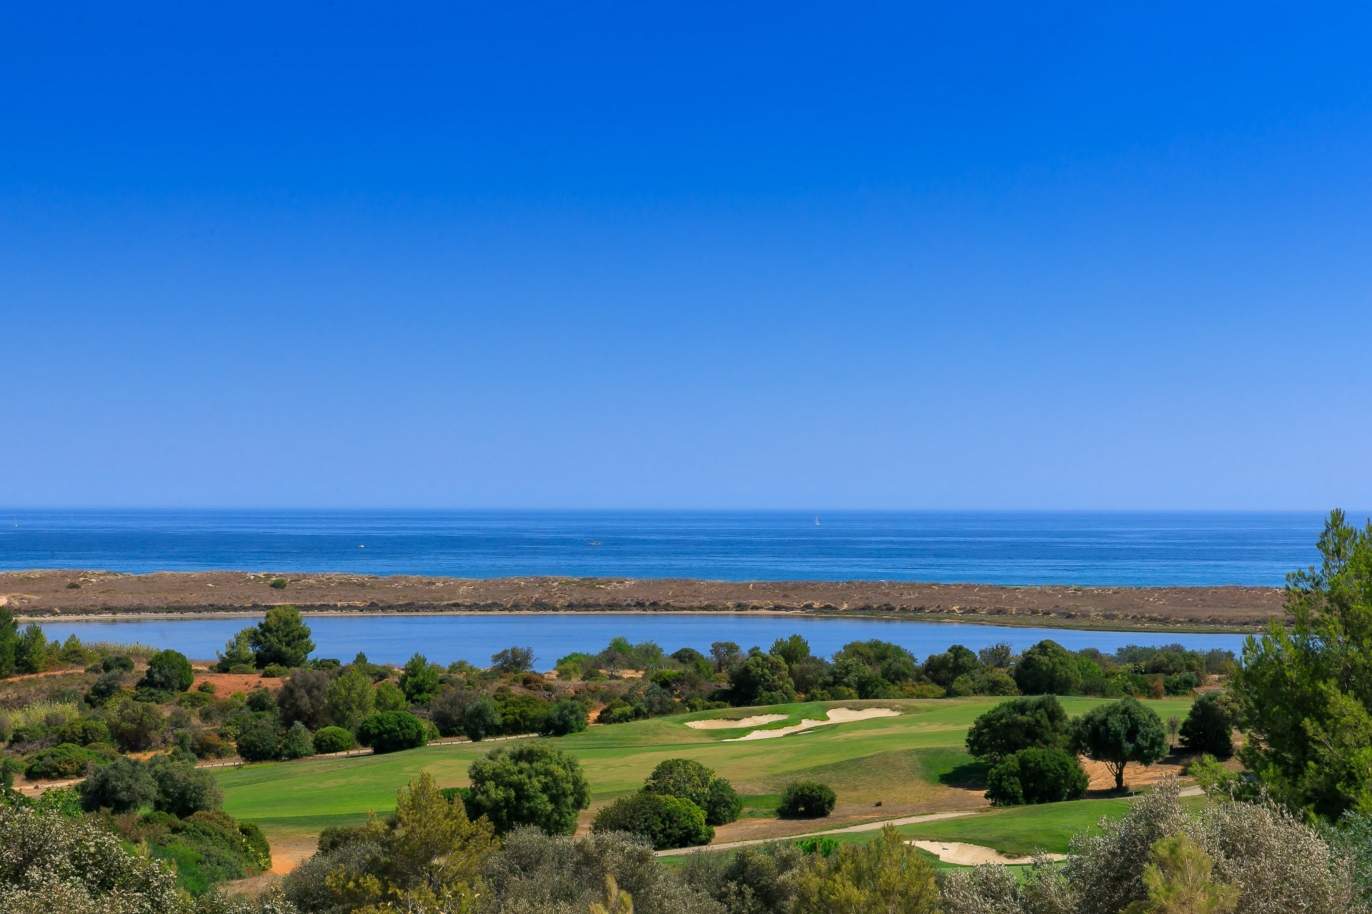 Terrain à vendre dans un complexe de golf, Lagos, Algarve, Portugal_122919